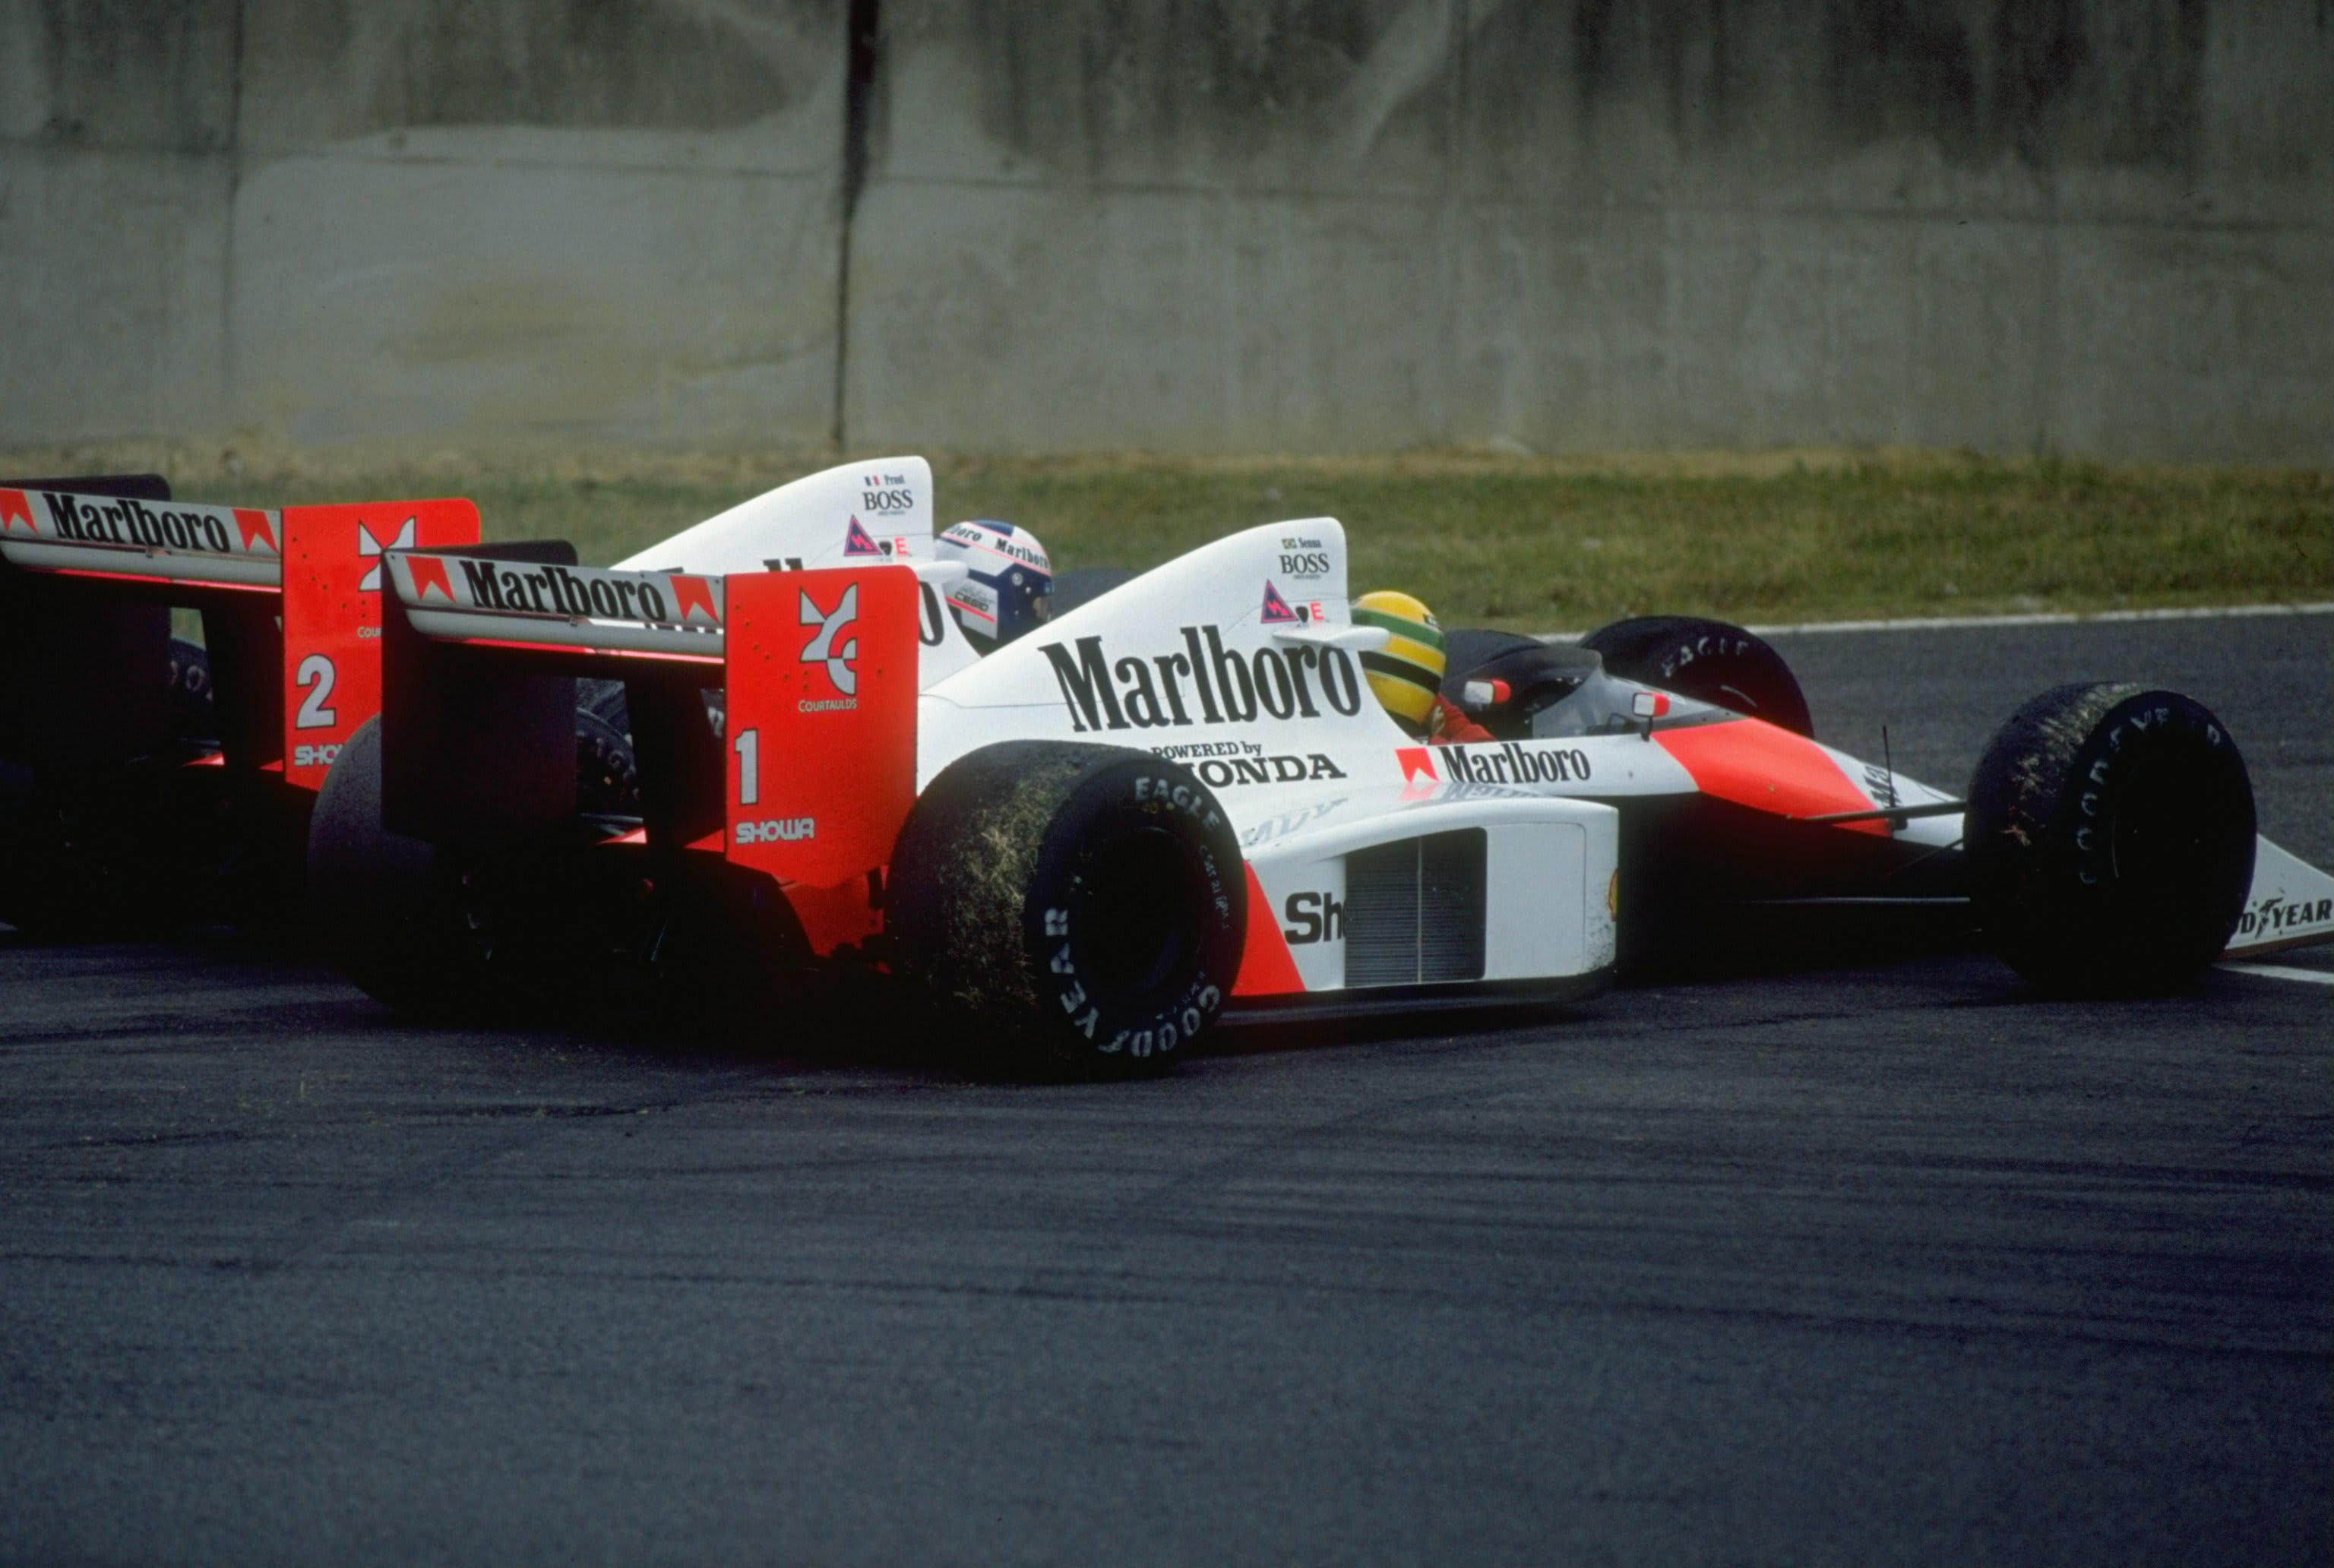 https://media.formula1.com/image/upload/content/dam/fom-website/manual/Misc/Senna-Prost/GettyImages-1917479.jpg